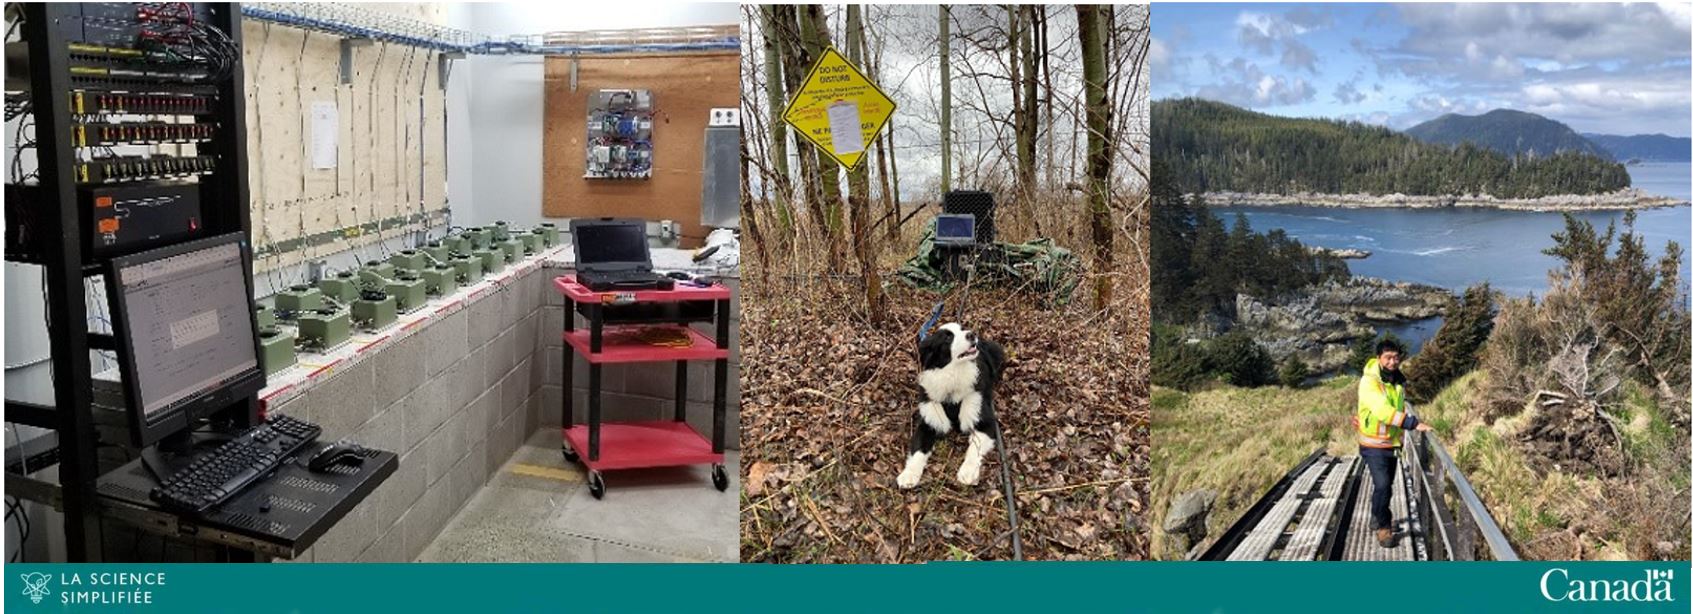 Image de compilation montrant le matériel sismique, un chien noir et blanc dans une zone forestière et un technologue debout sur un pont dans une zone côtière.